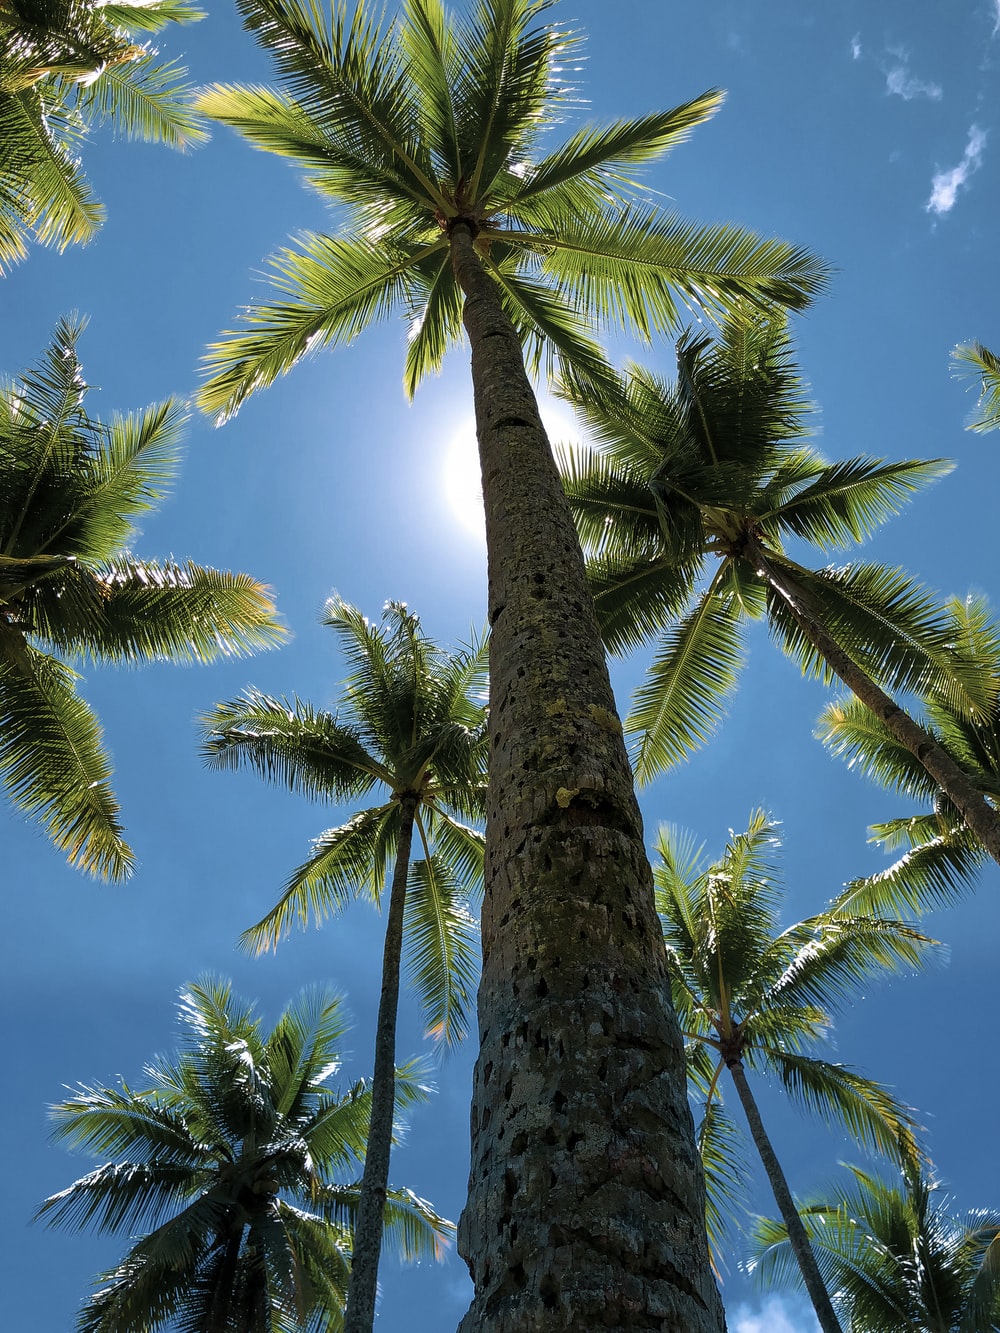 Hình ảnh cây dừa tuyệt đẹp